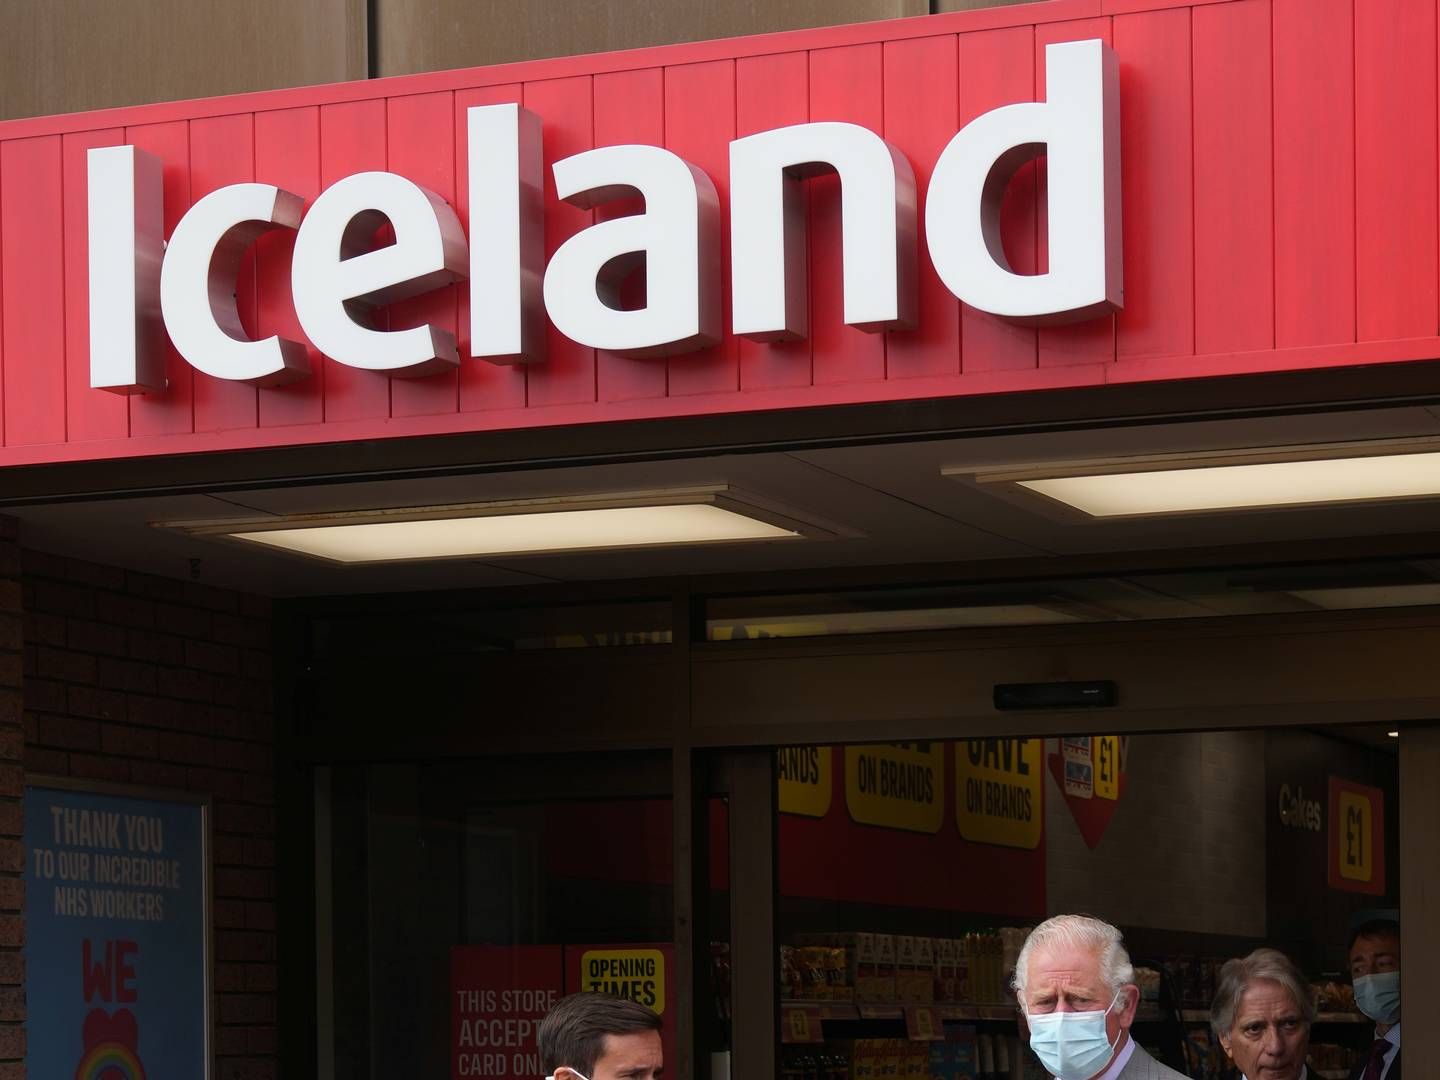 Det har ifølge avisen The Independent kostet supermarkedskæden Iceland 26 mio. pund at skrue ned for priserne på de 500 varer. Det svarer til næsten 226 mio. kr. | Foto: Pool/reuters/ritzau Scanpix